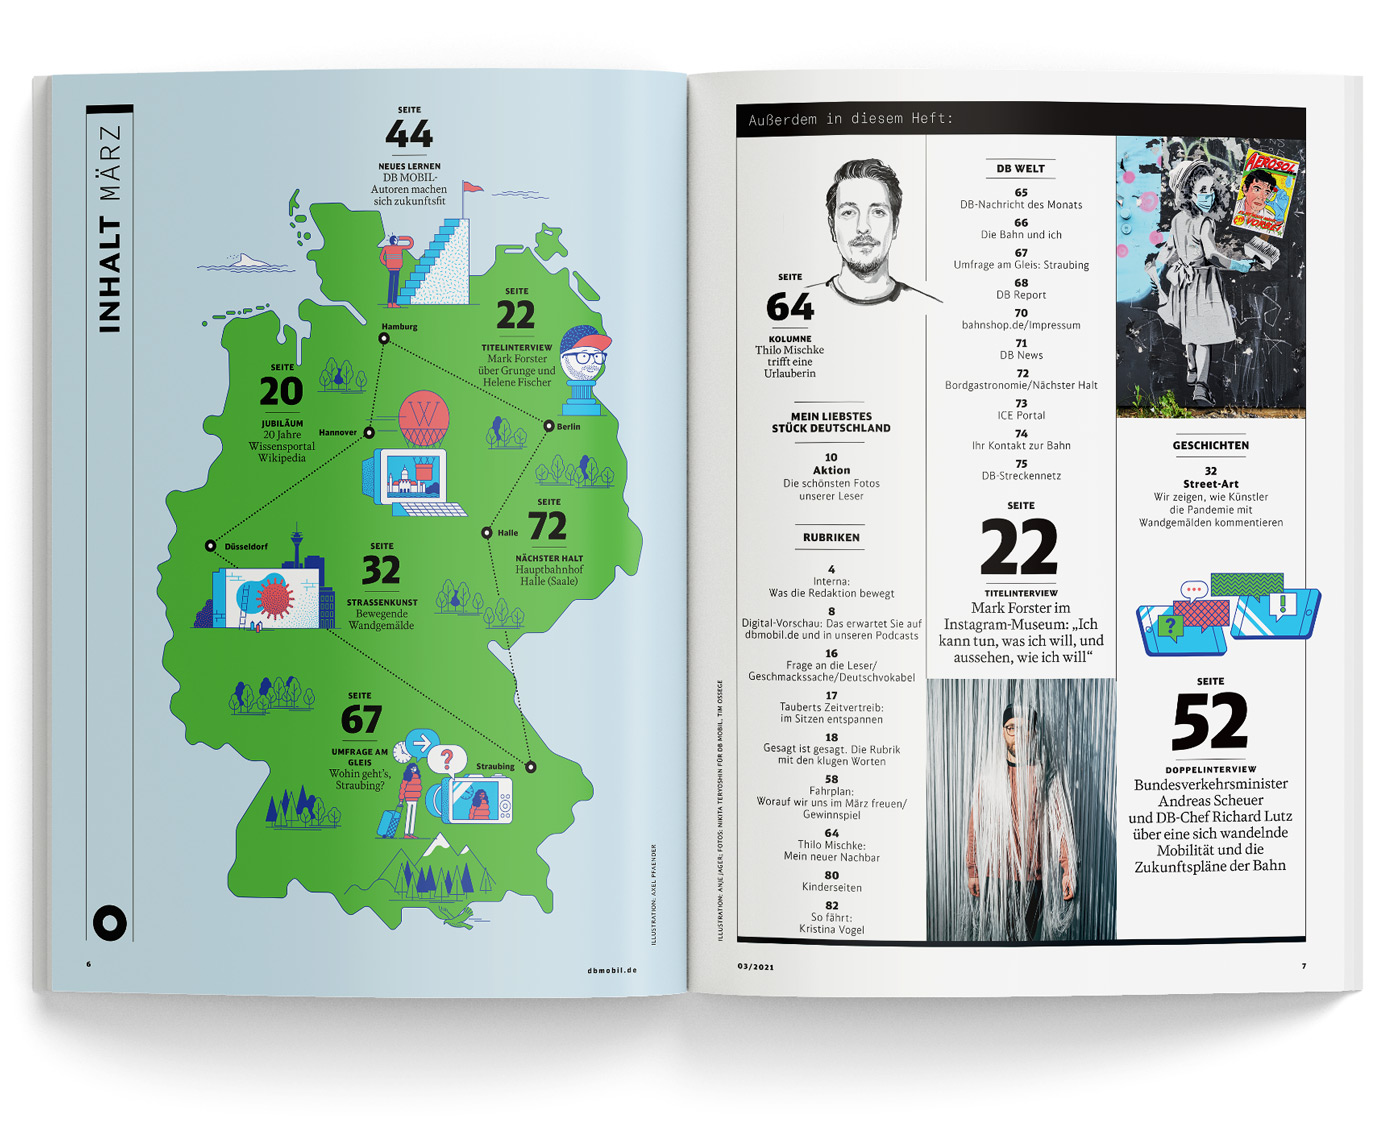 Doppelseite des DB Mobil Magazin 3/2021 mit inhaltsverzeichnis